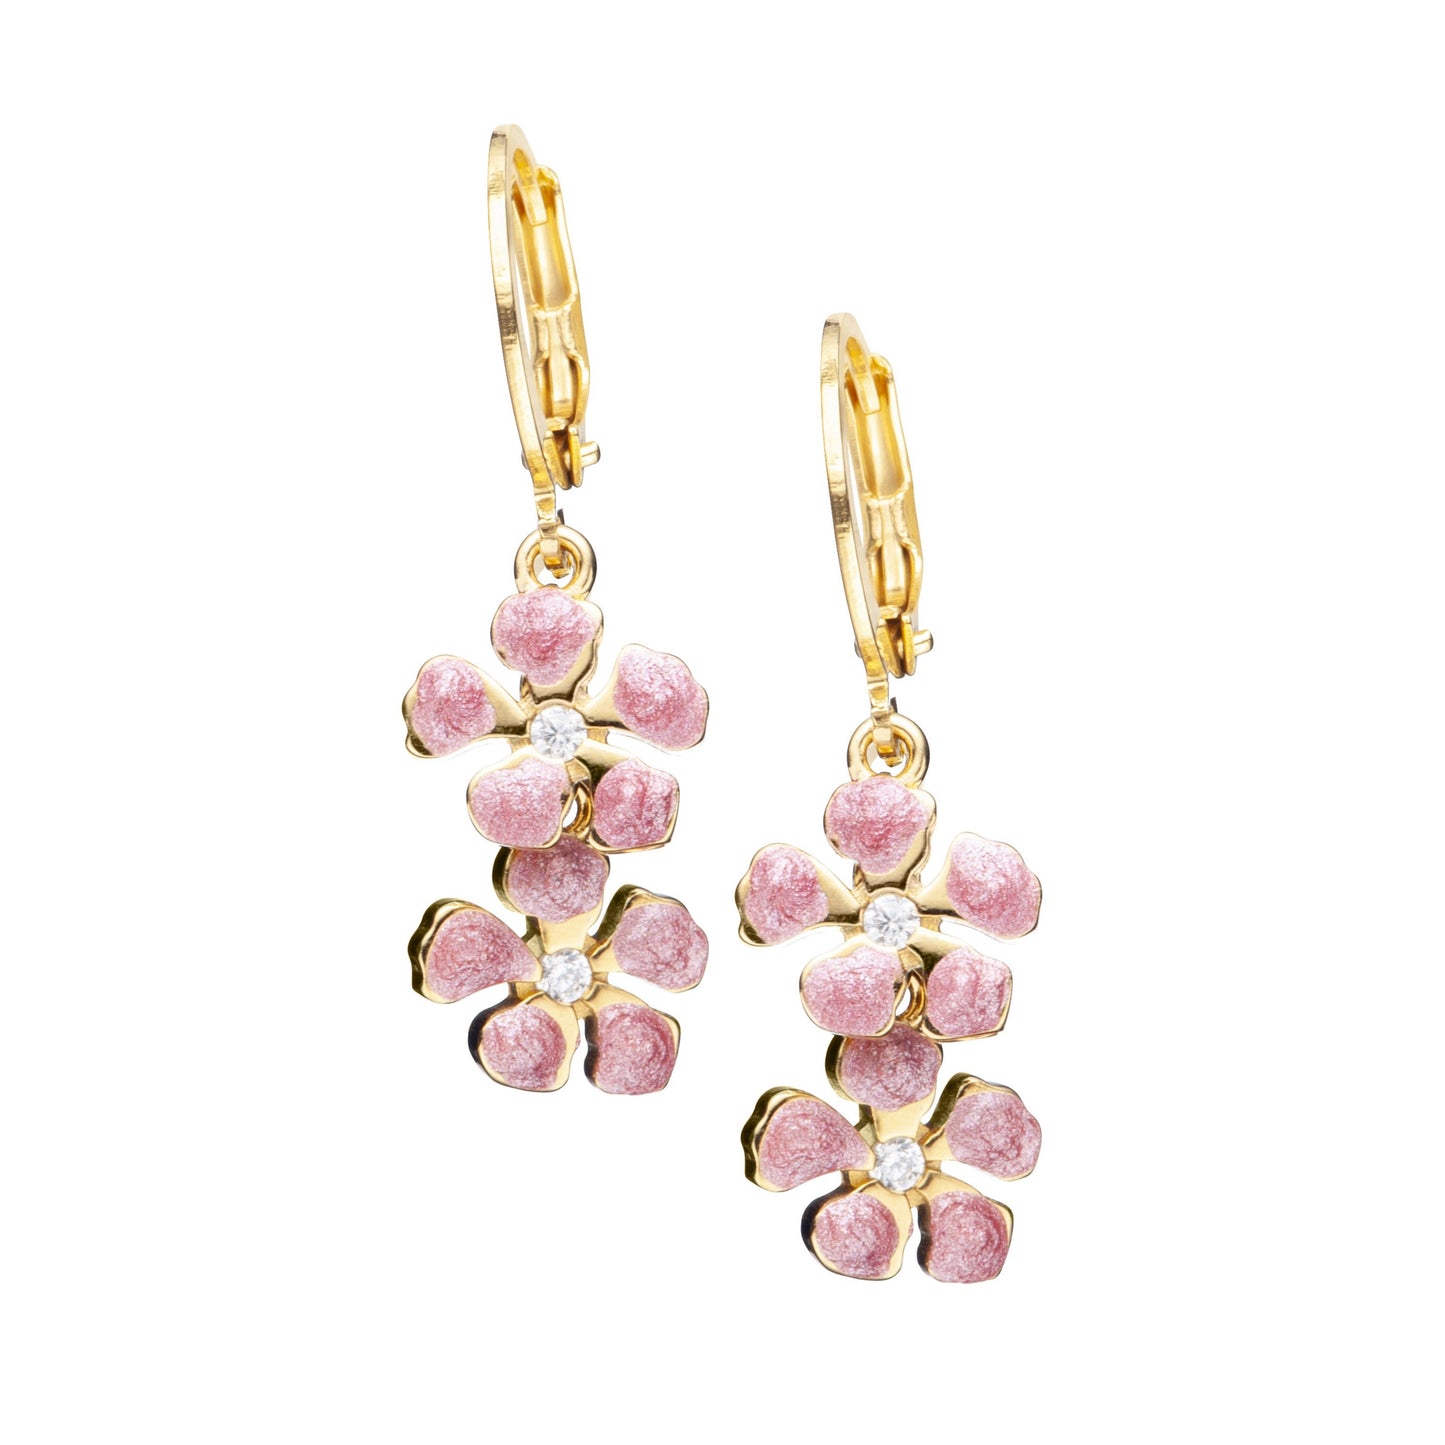 Surgical Steel Double Flower Earring - HK Jewels